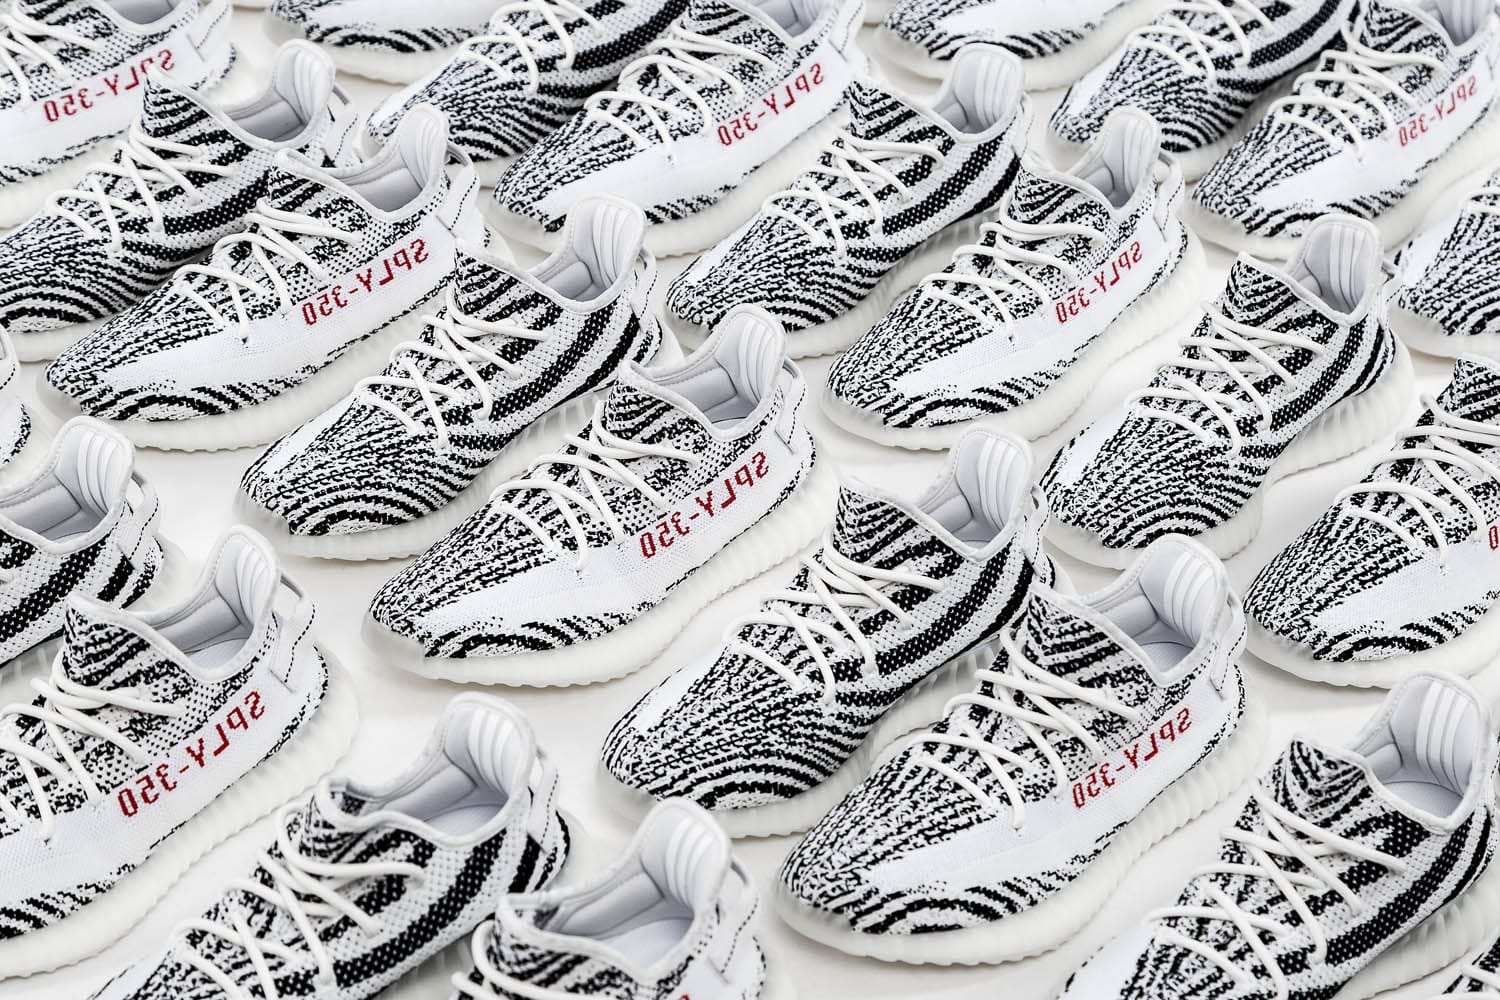 yeezy boost 350 zebra release date